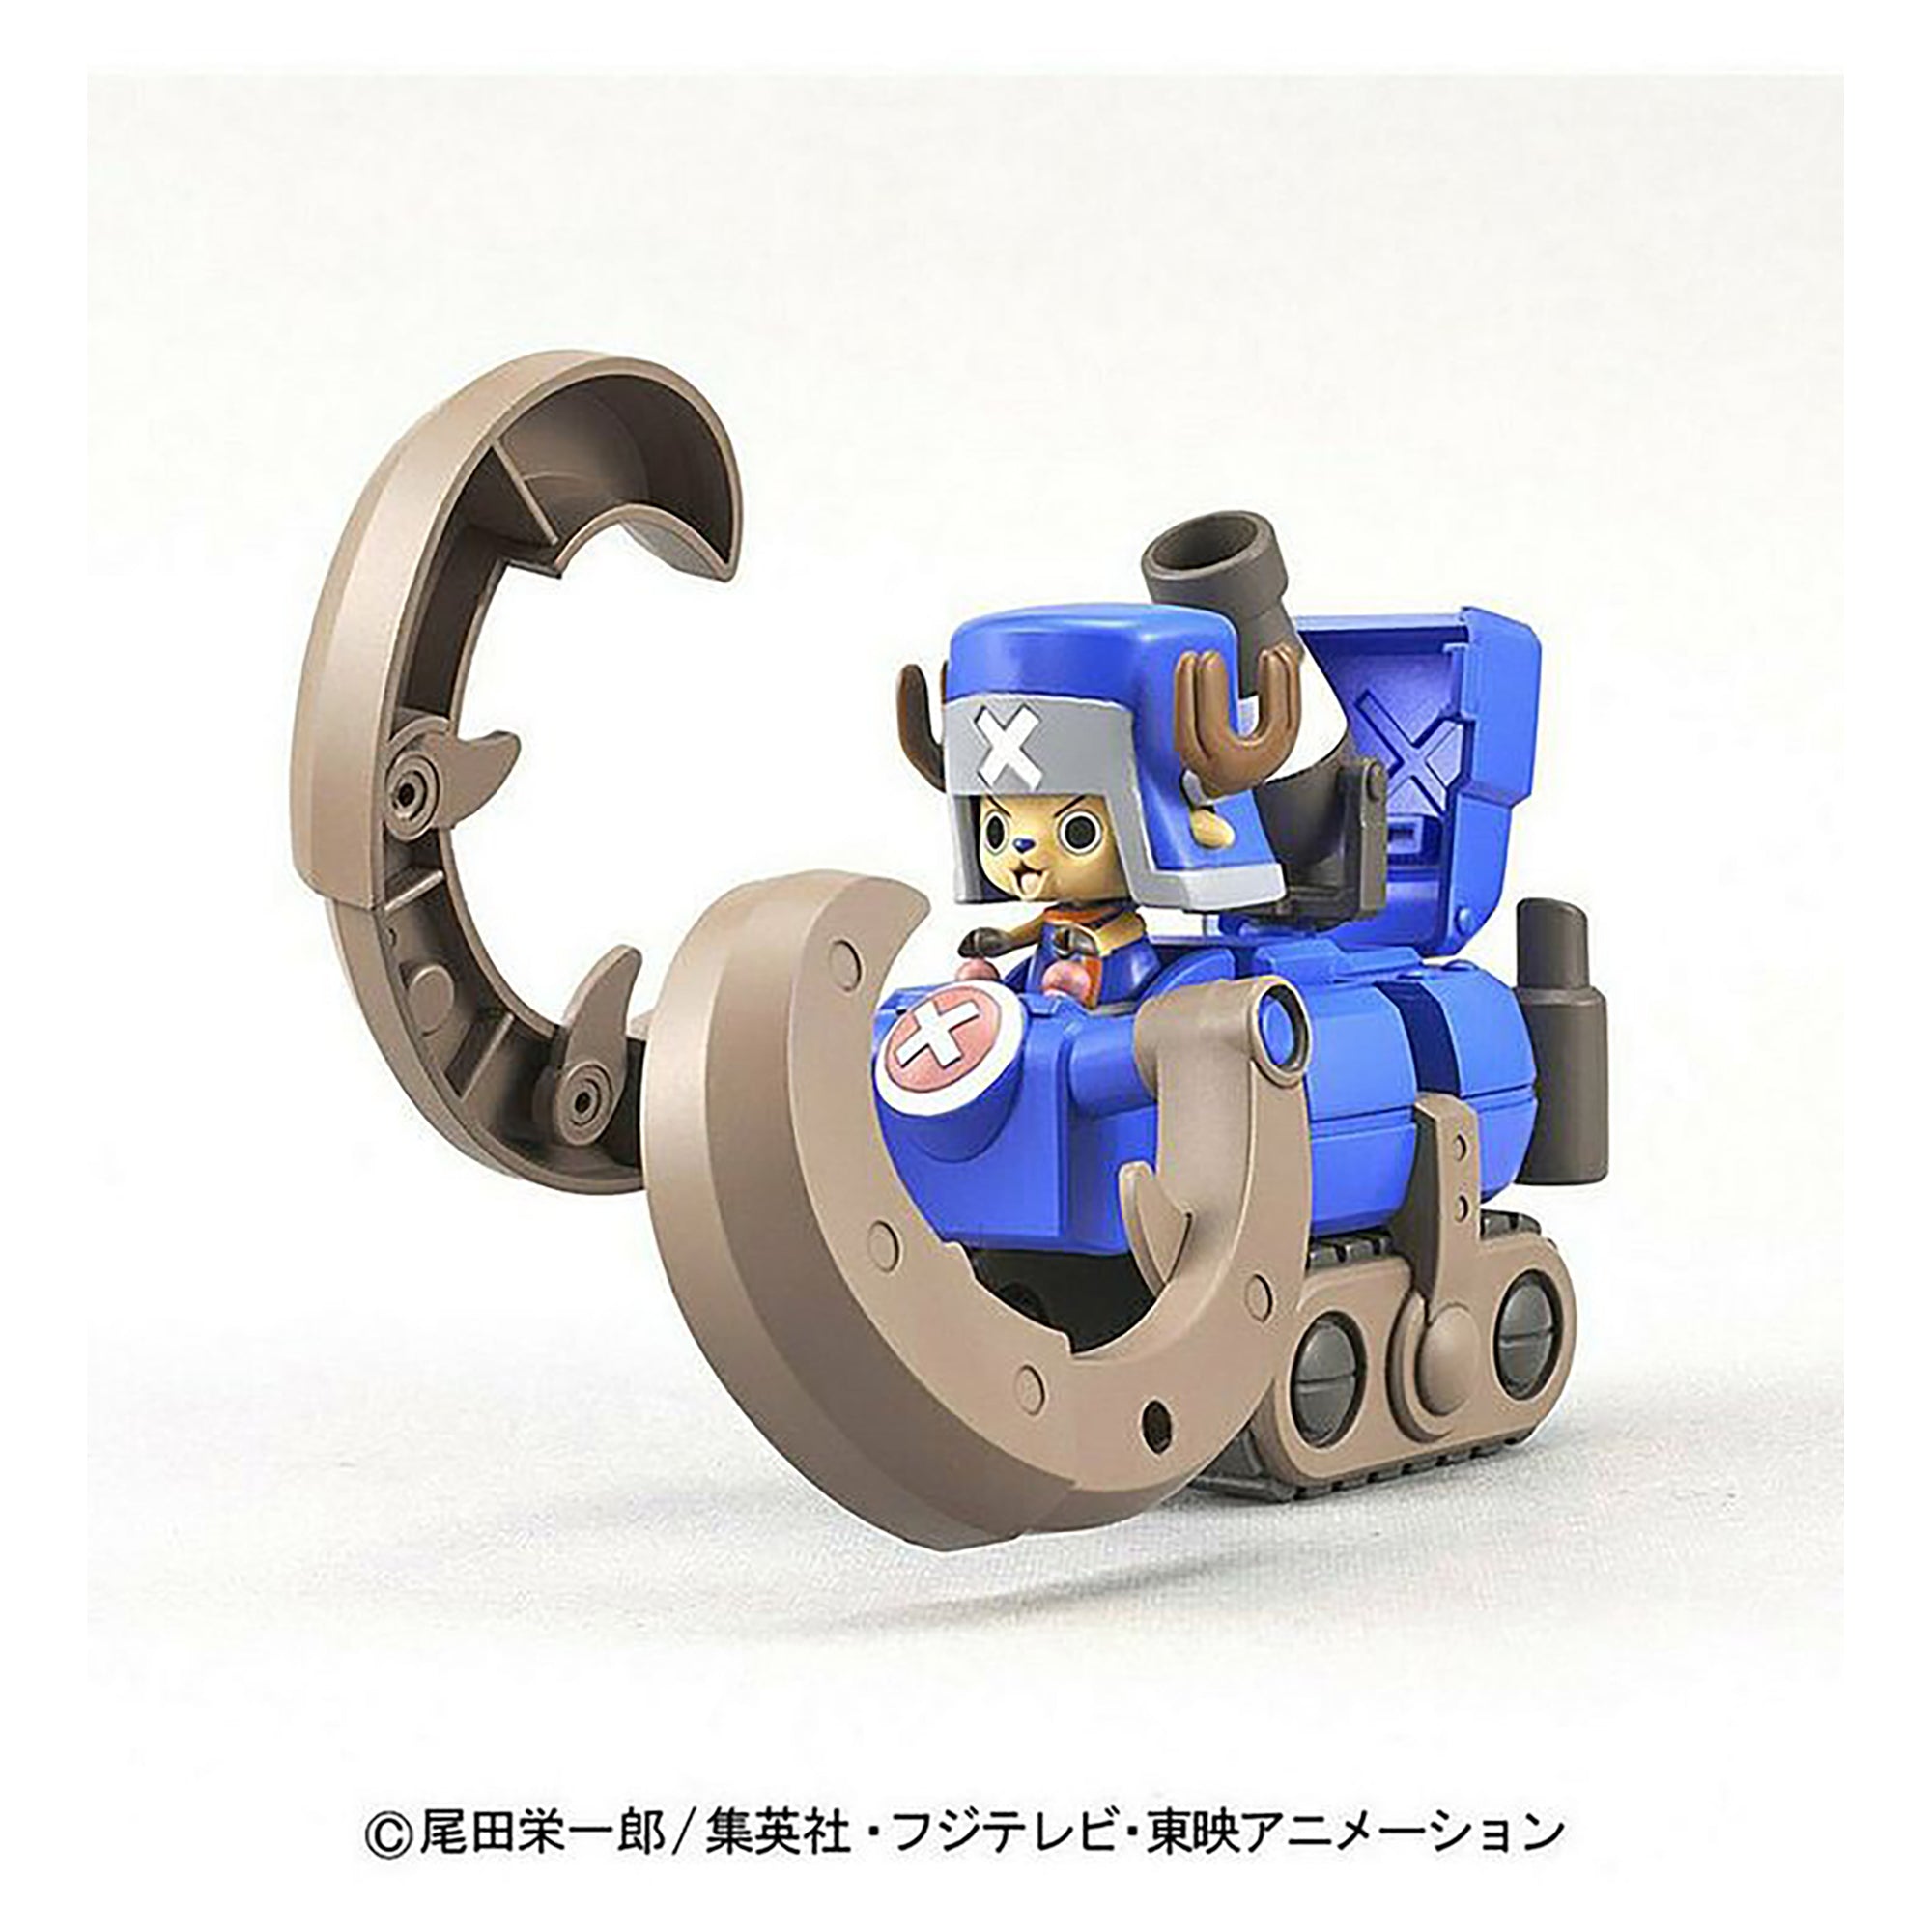 Bandai Hobby One Piece Robosuper3 Horn Dozer